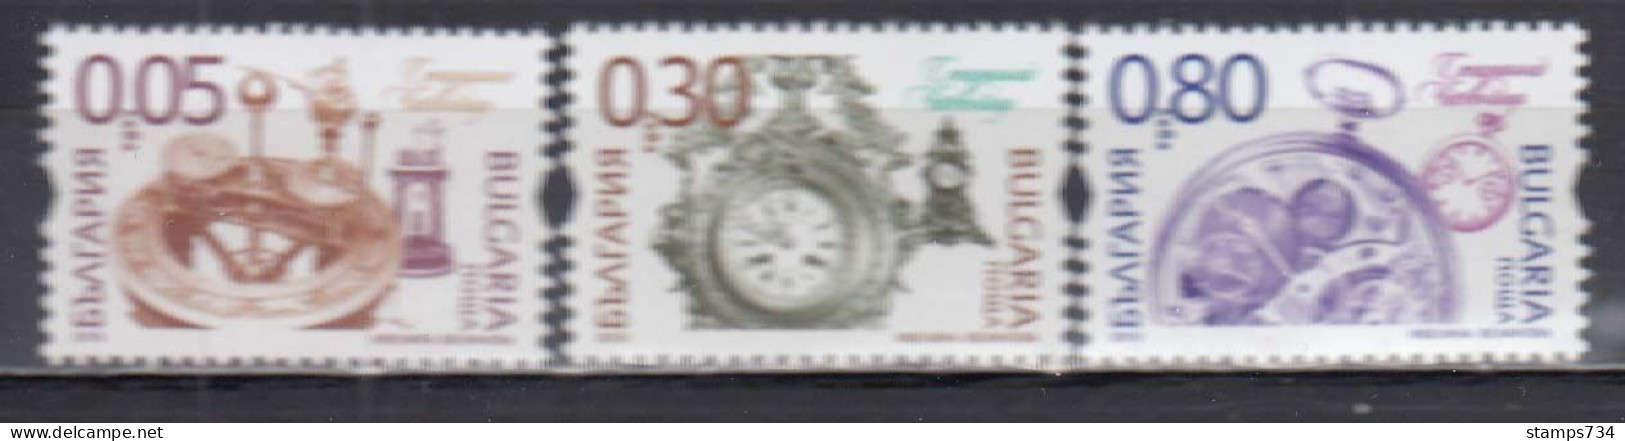 Bulgaria 2015 - Historical Clocks, Mi-Nr. 5194/96, MNH** - Unused Stamps